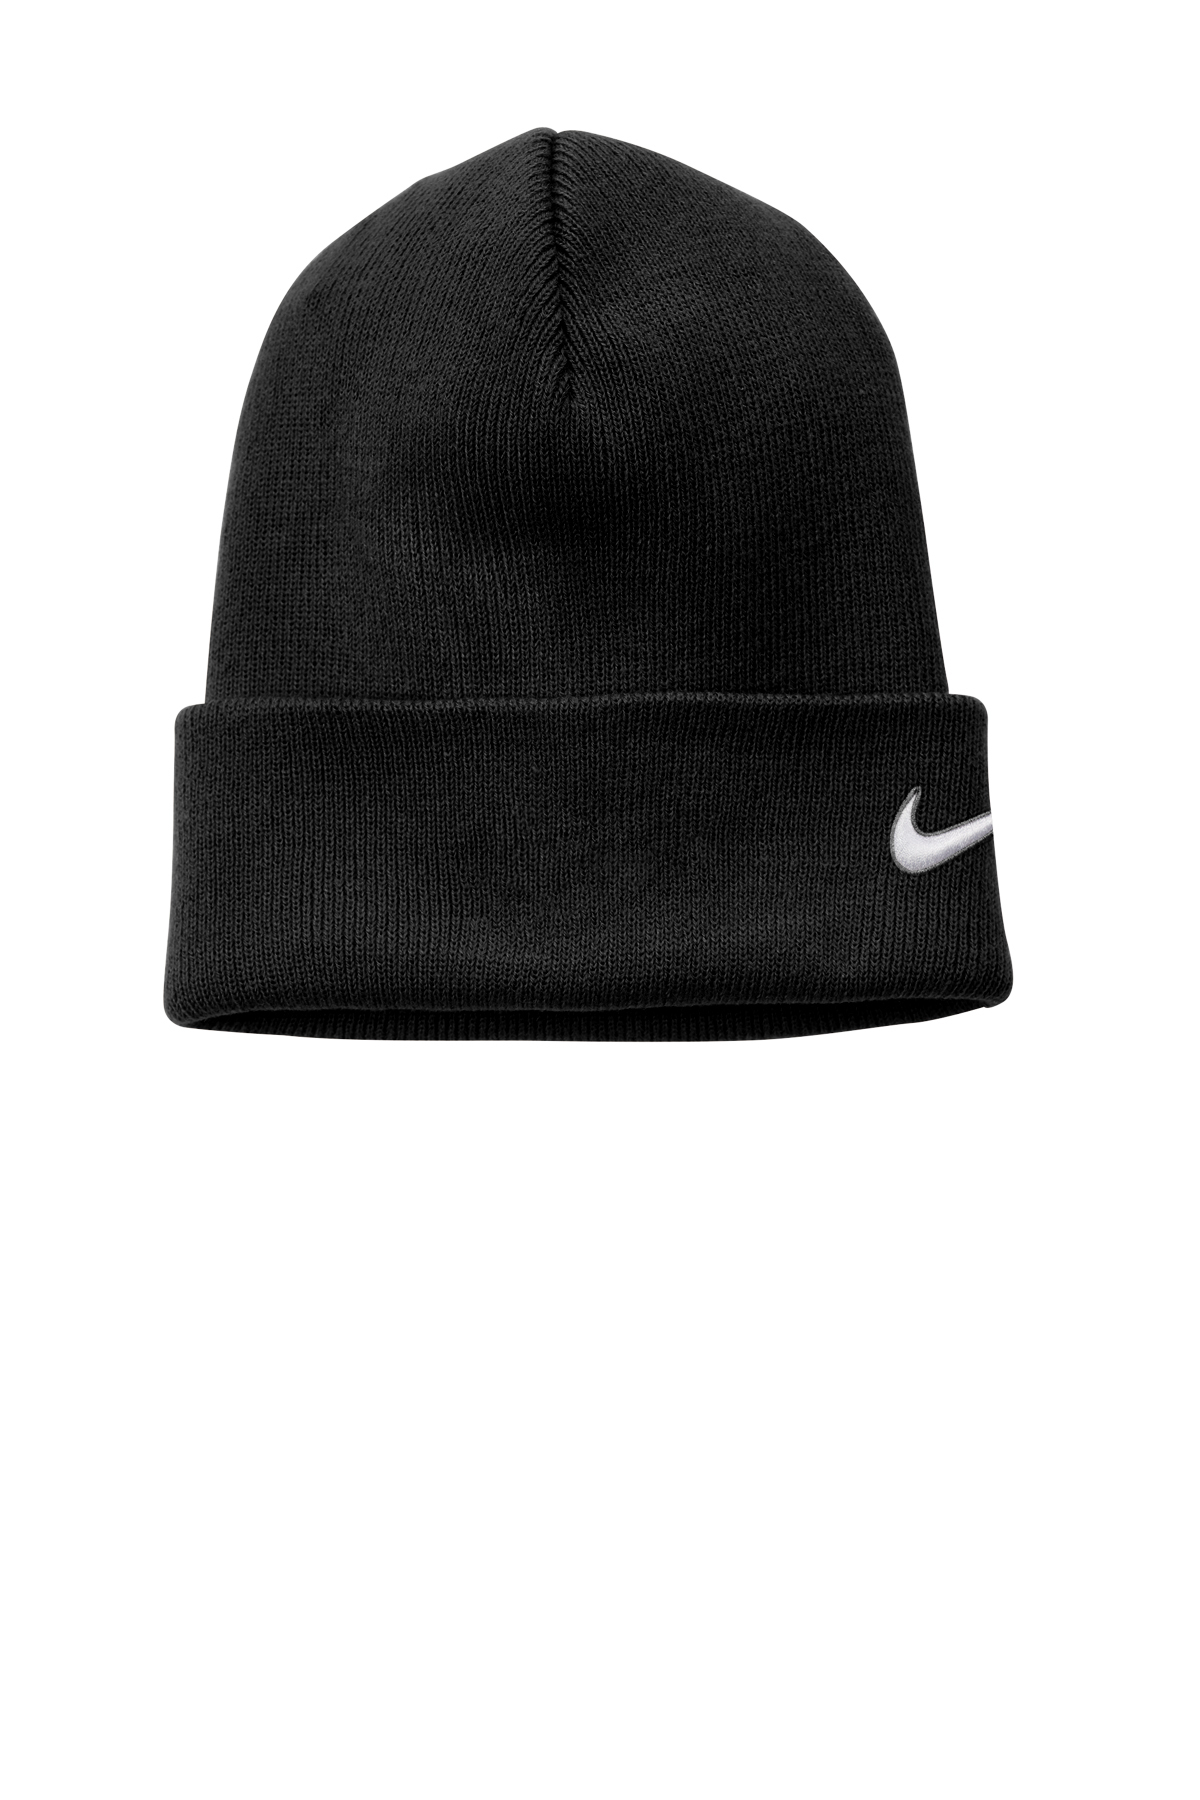 Bonnet Nike Color Black